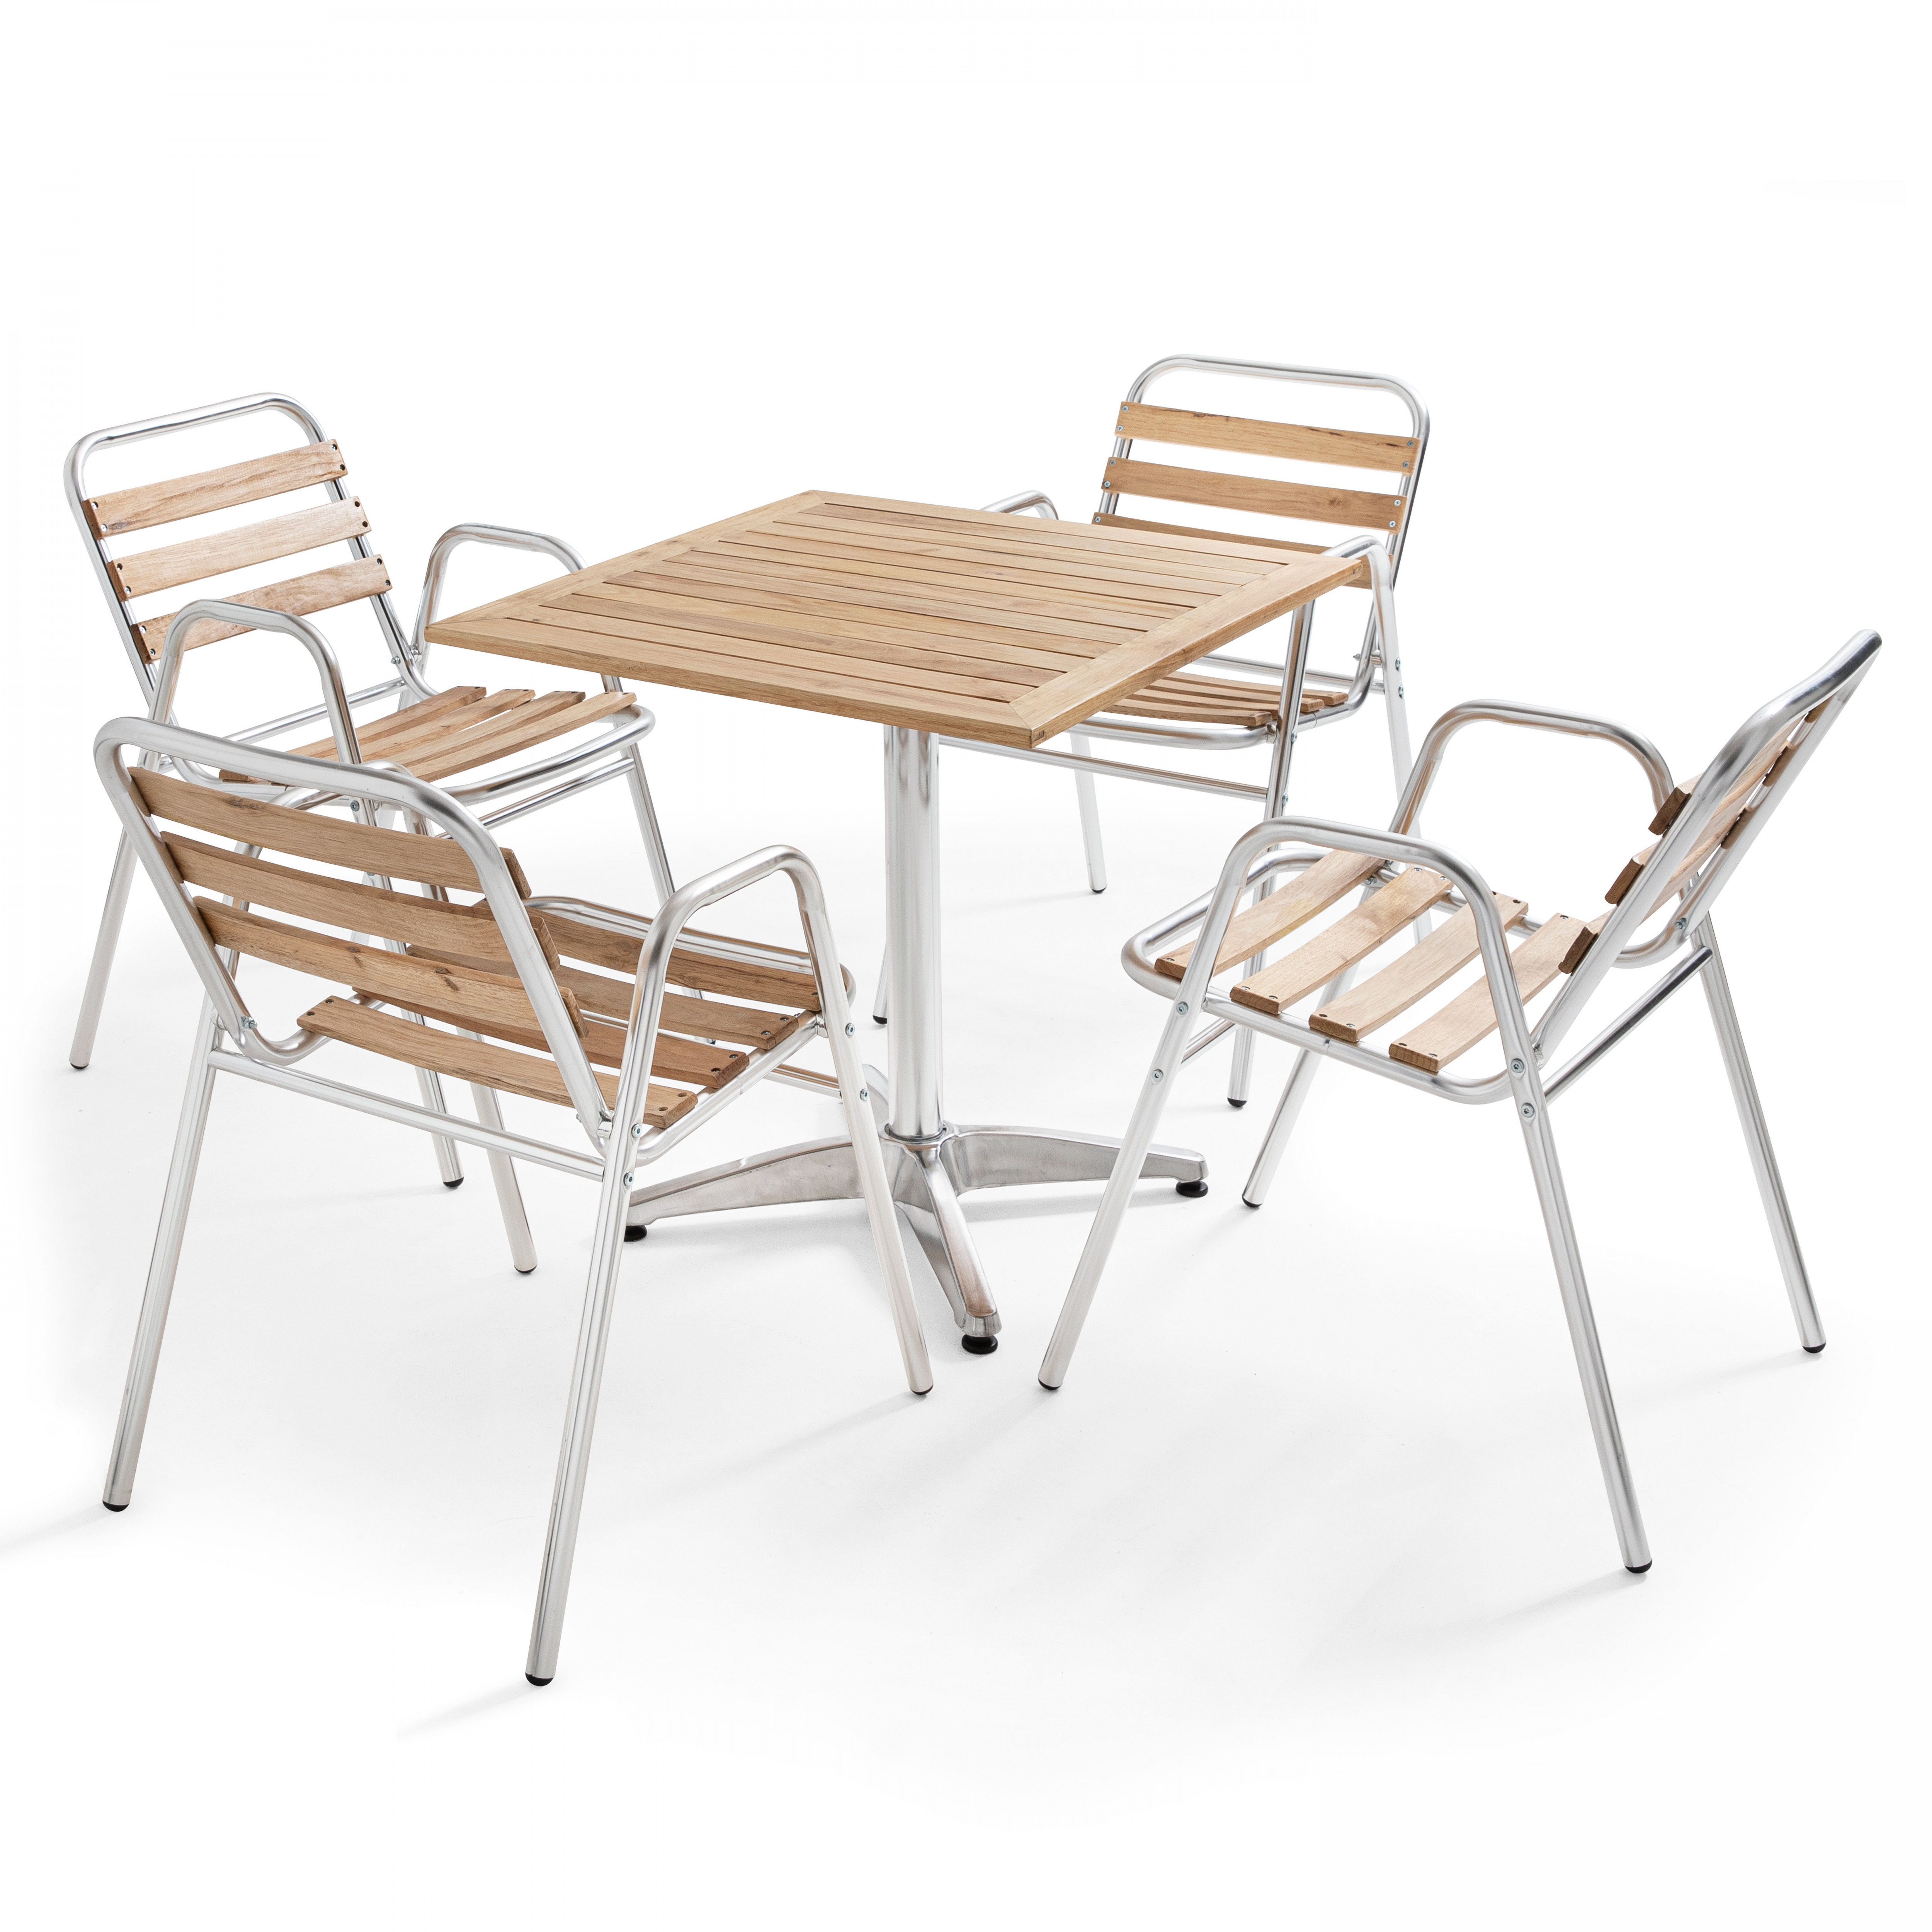 Ensemble terrasse, table carrée et 4 chaises avec accoudoirs en bois et aluminium